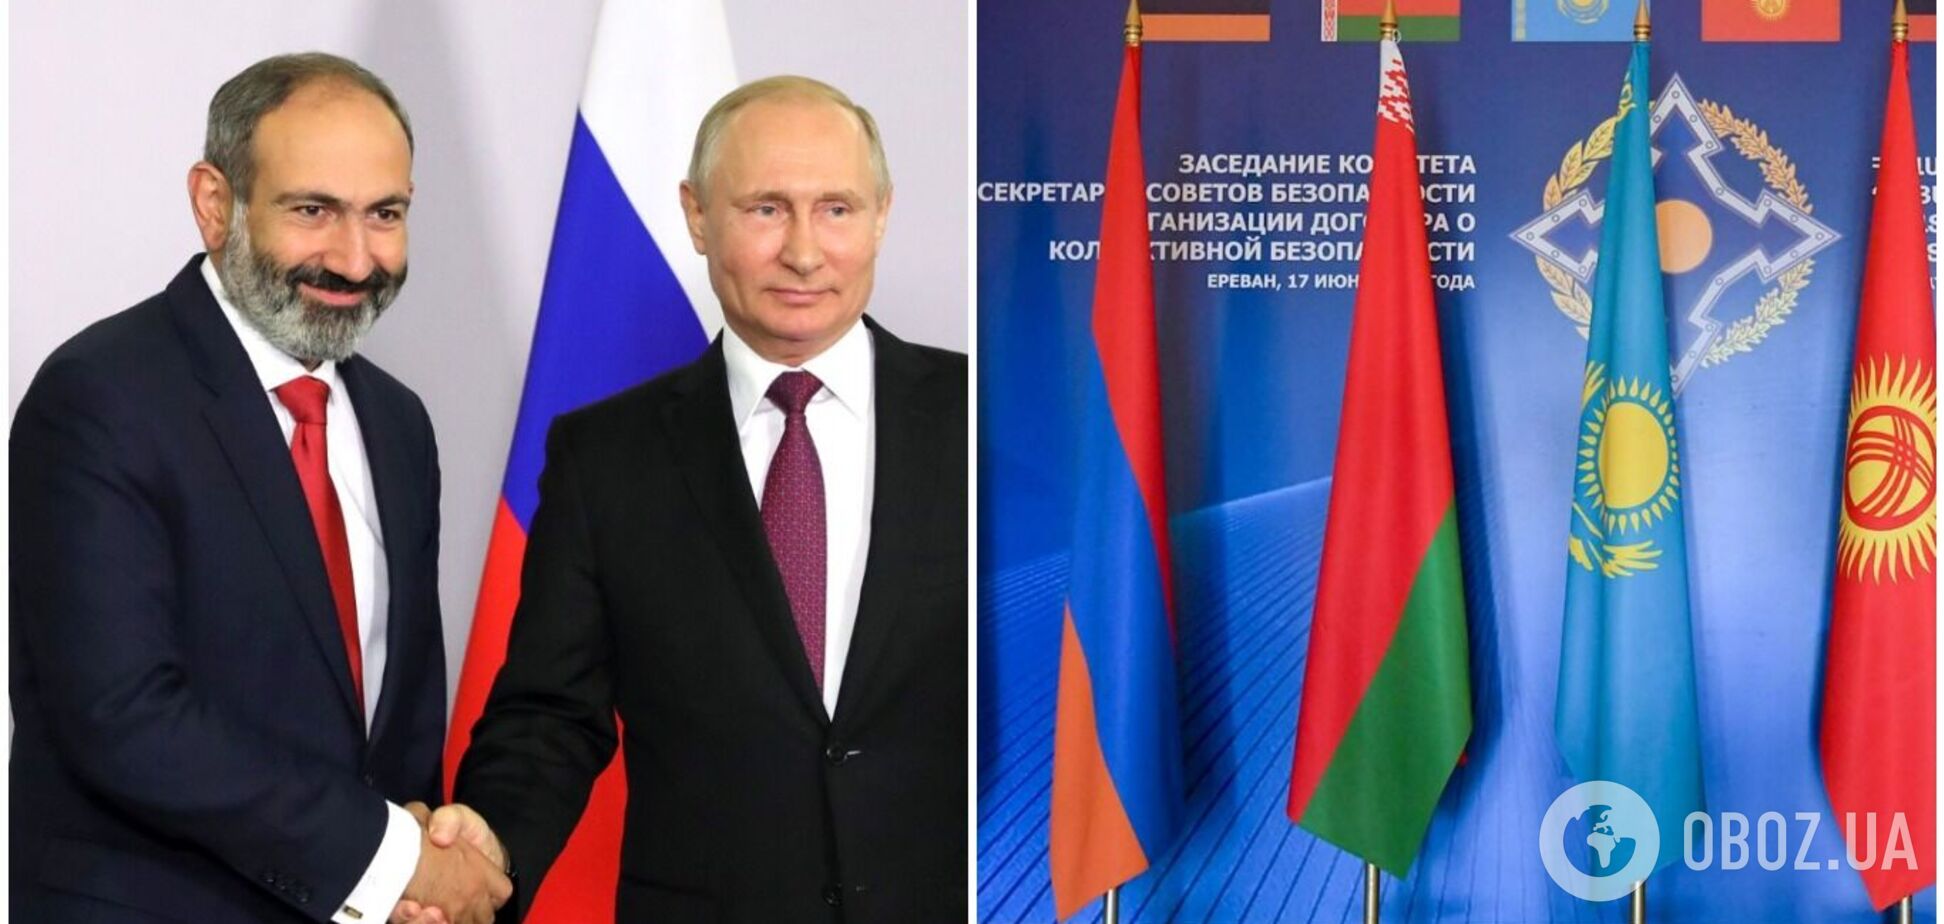 Вірменія вперше з 2009-го не буде присутня на саміті ОДКБ: раніше Пашинян дорікав Москві